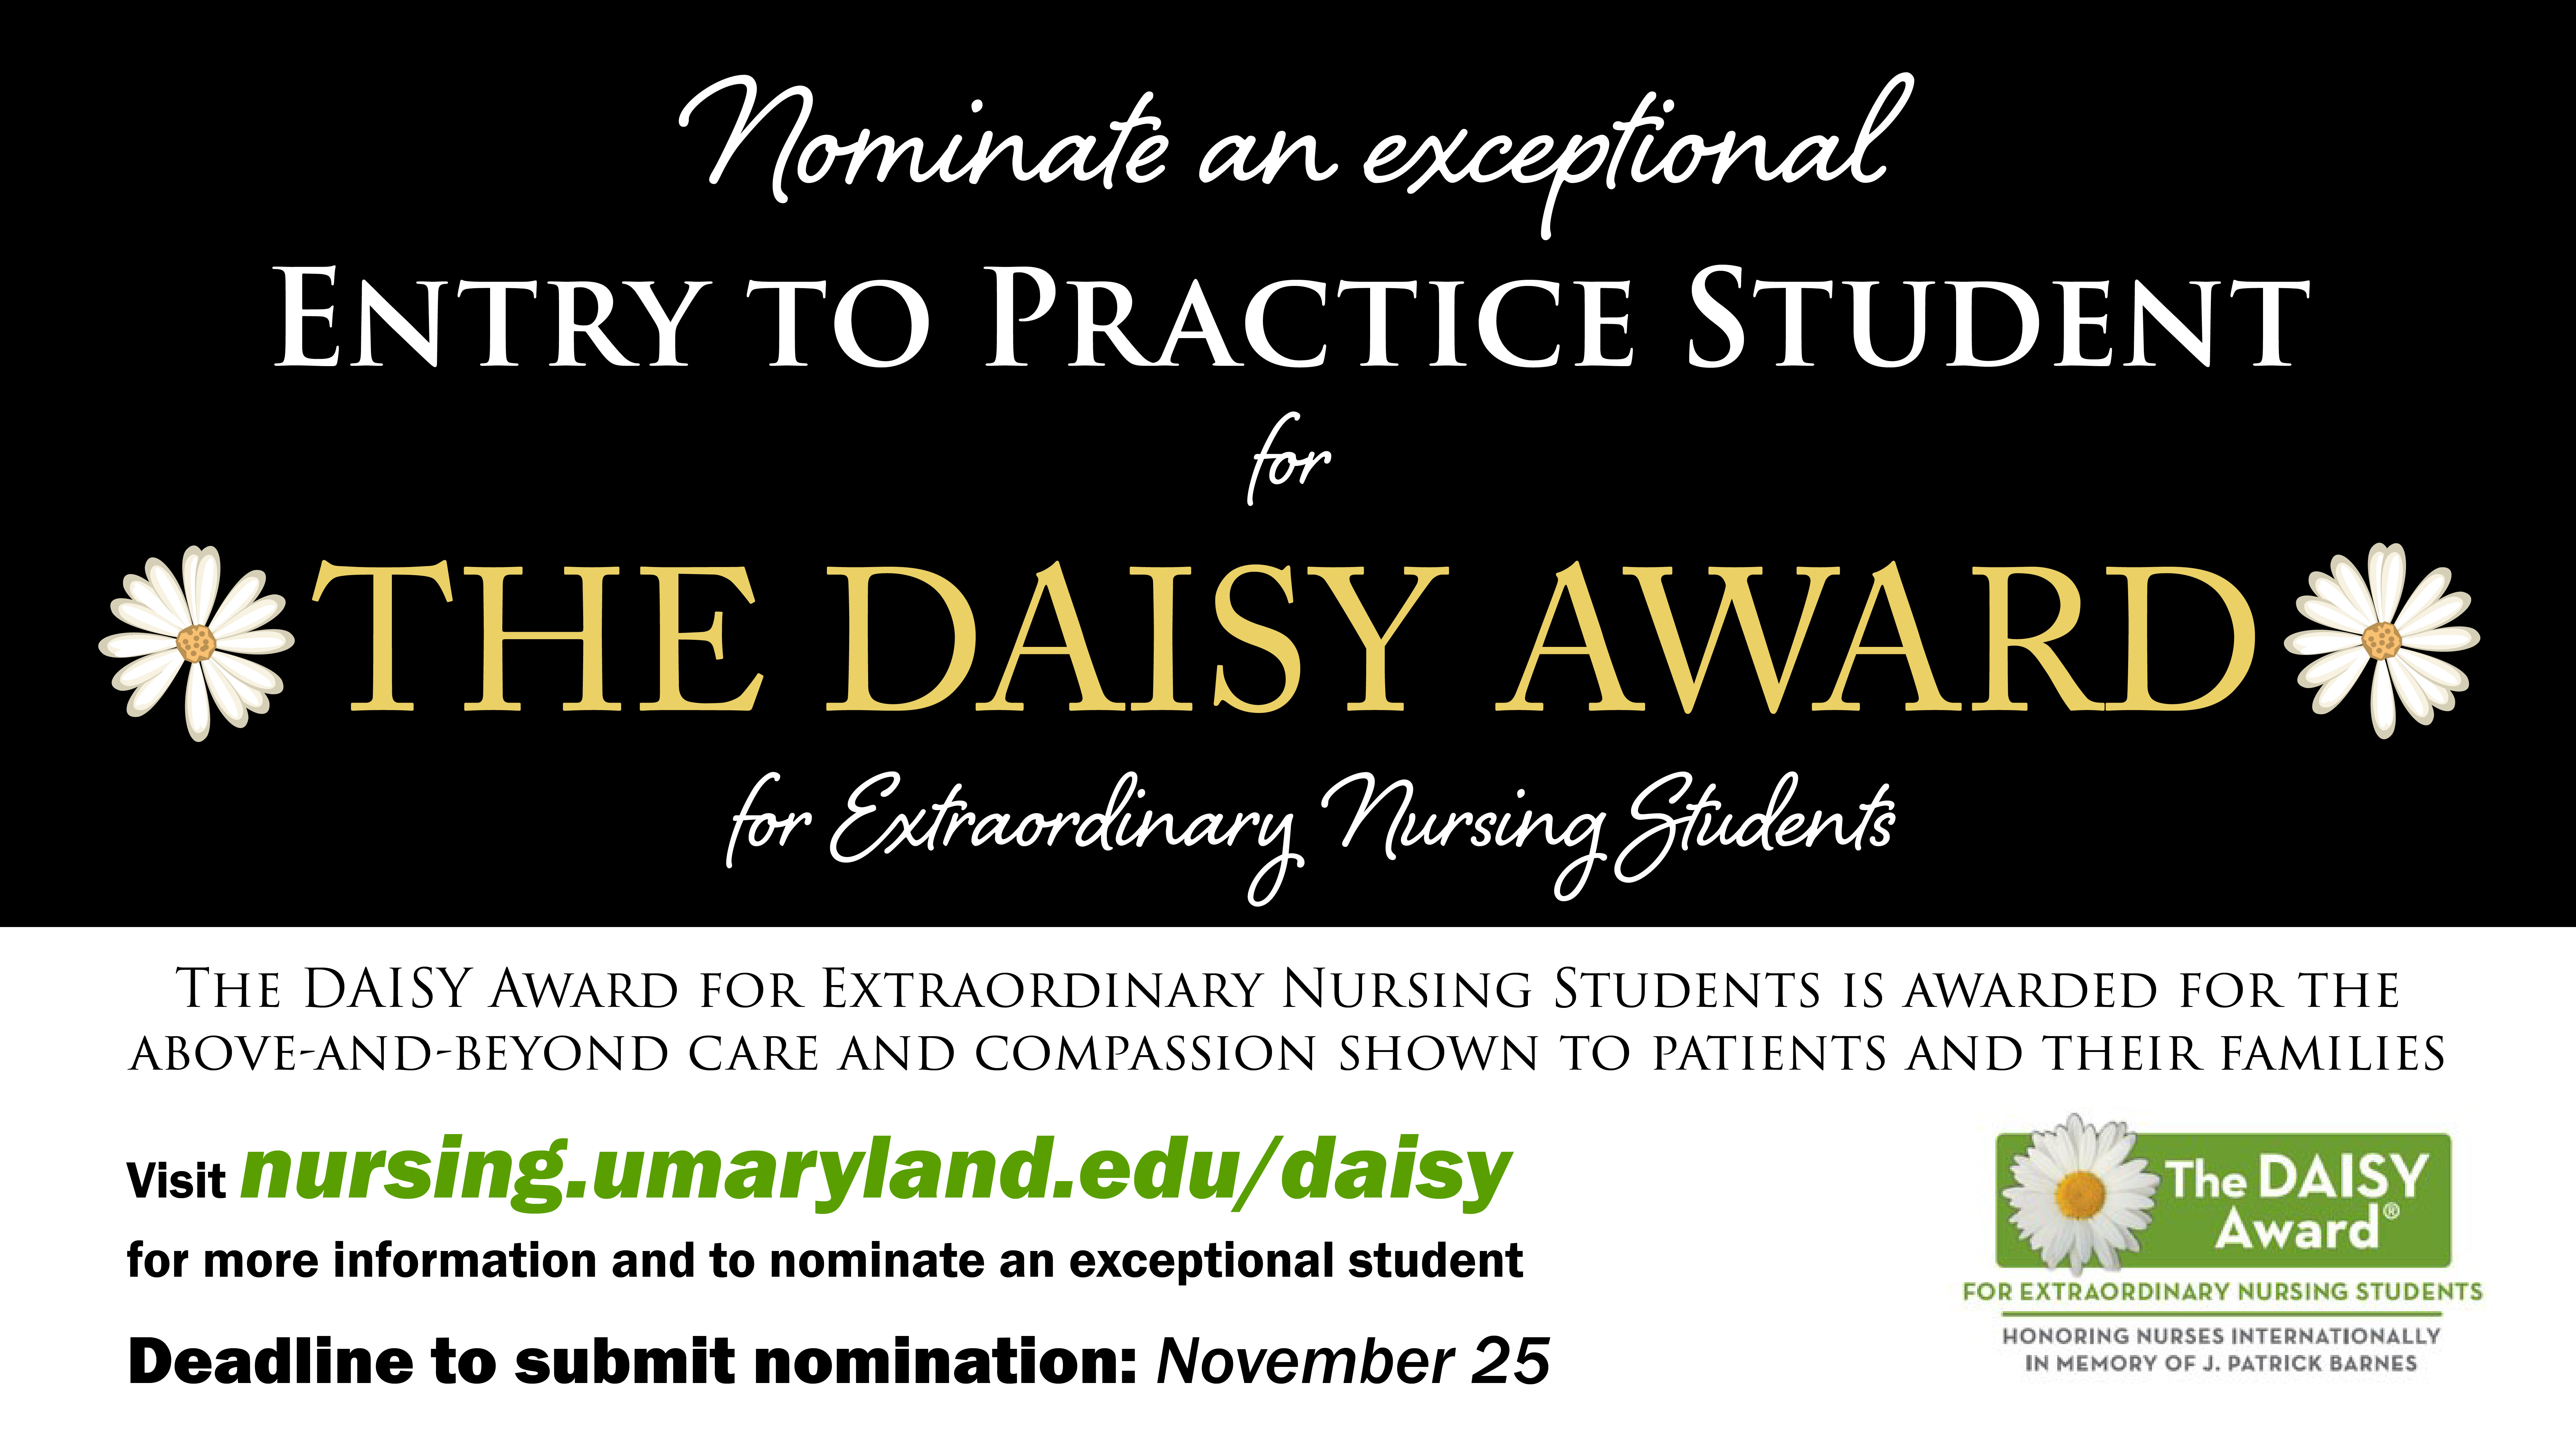 DAISY Award for Extraordinary Nursing Students